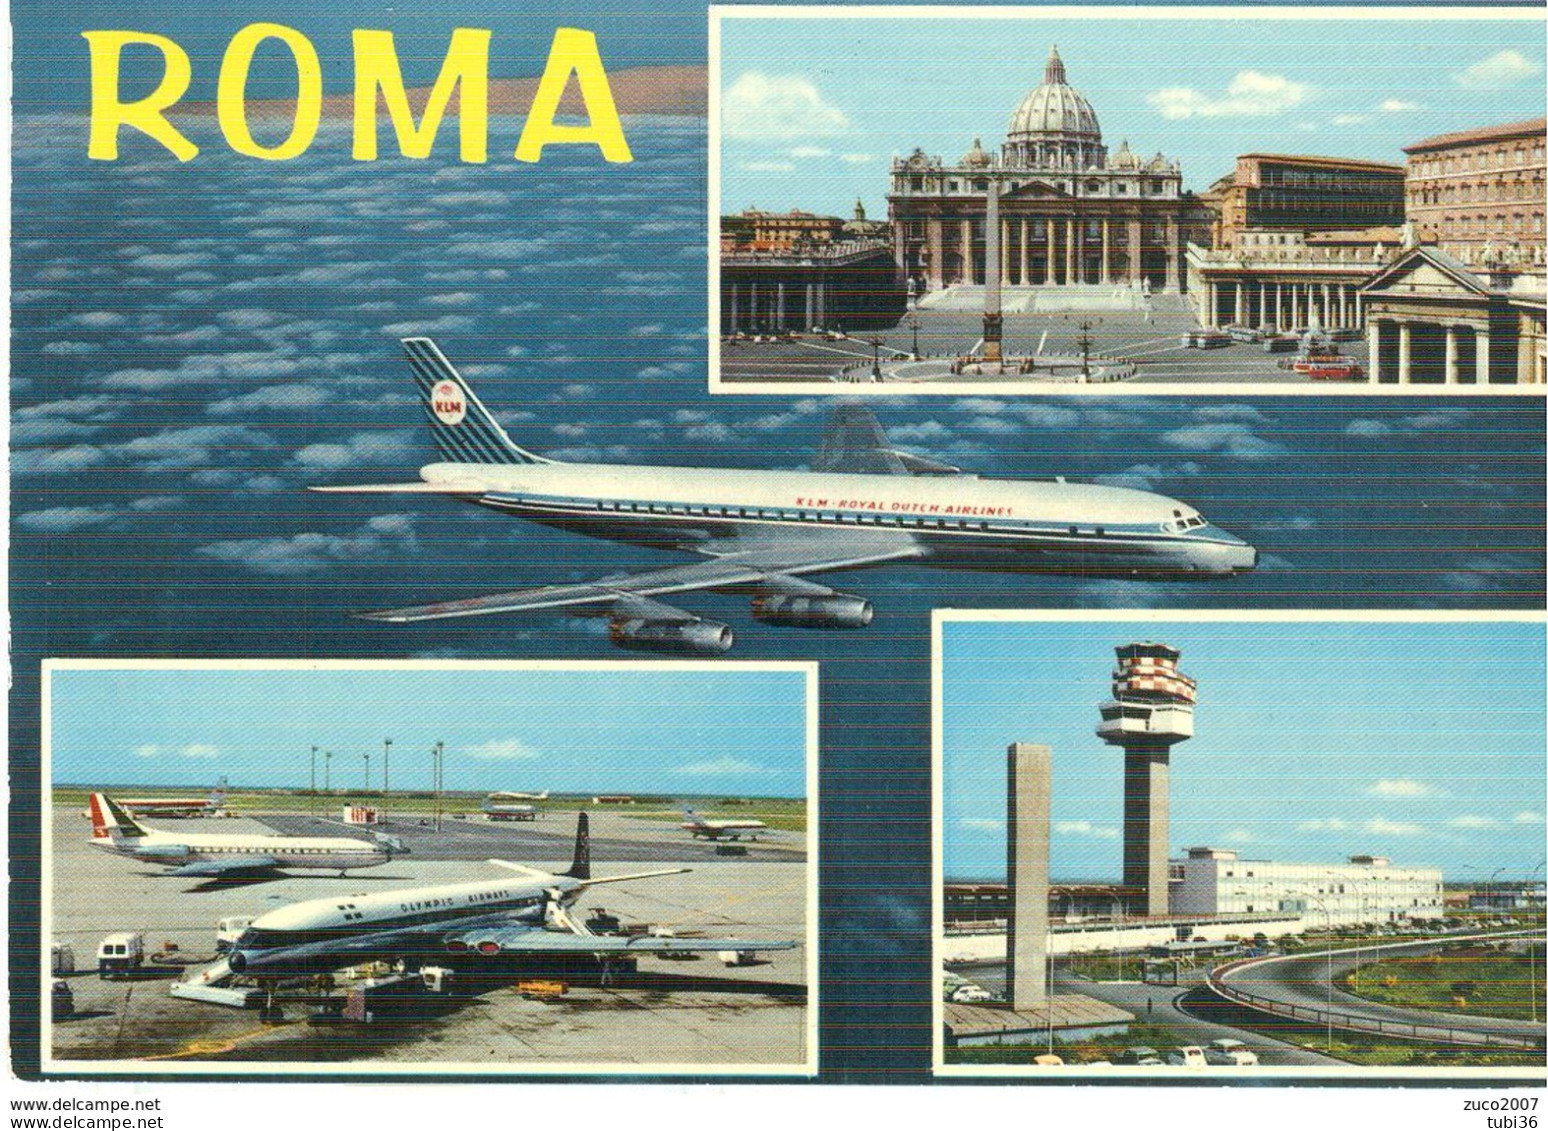 ROMA - 4 VEDUTINE - AEROPORTO,AEREI -S.PIETRO-COLORI,VIAGGIATA 1969 - POSTE ROMA - Transports